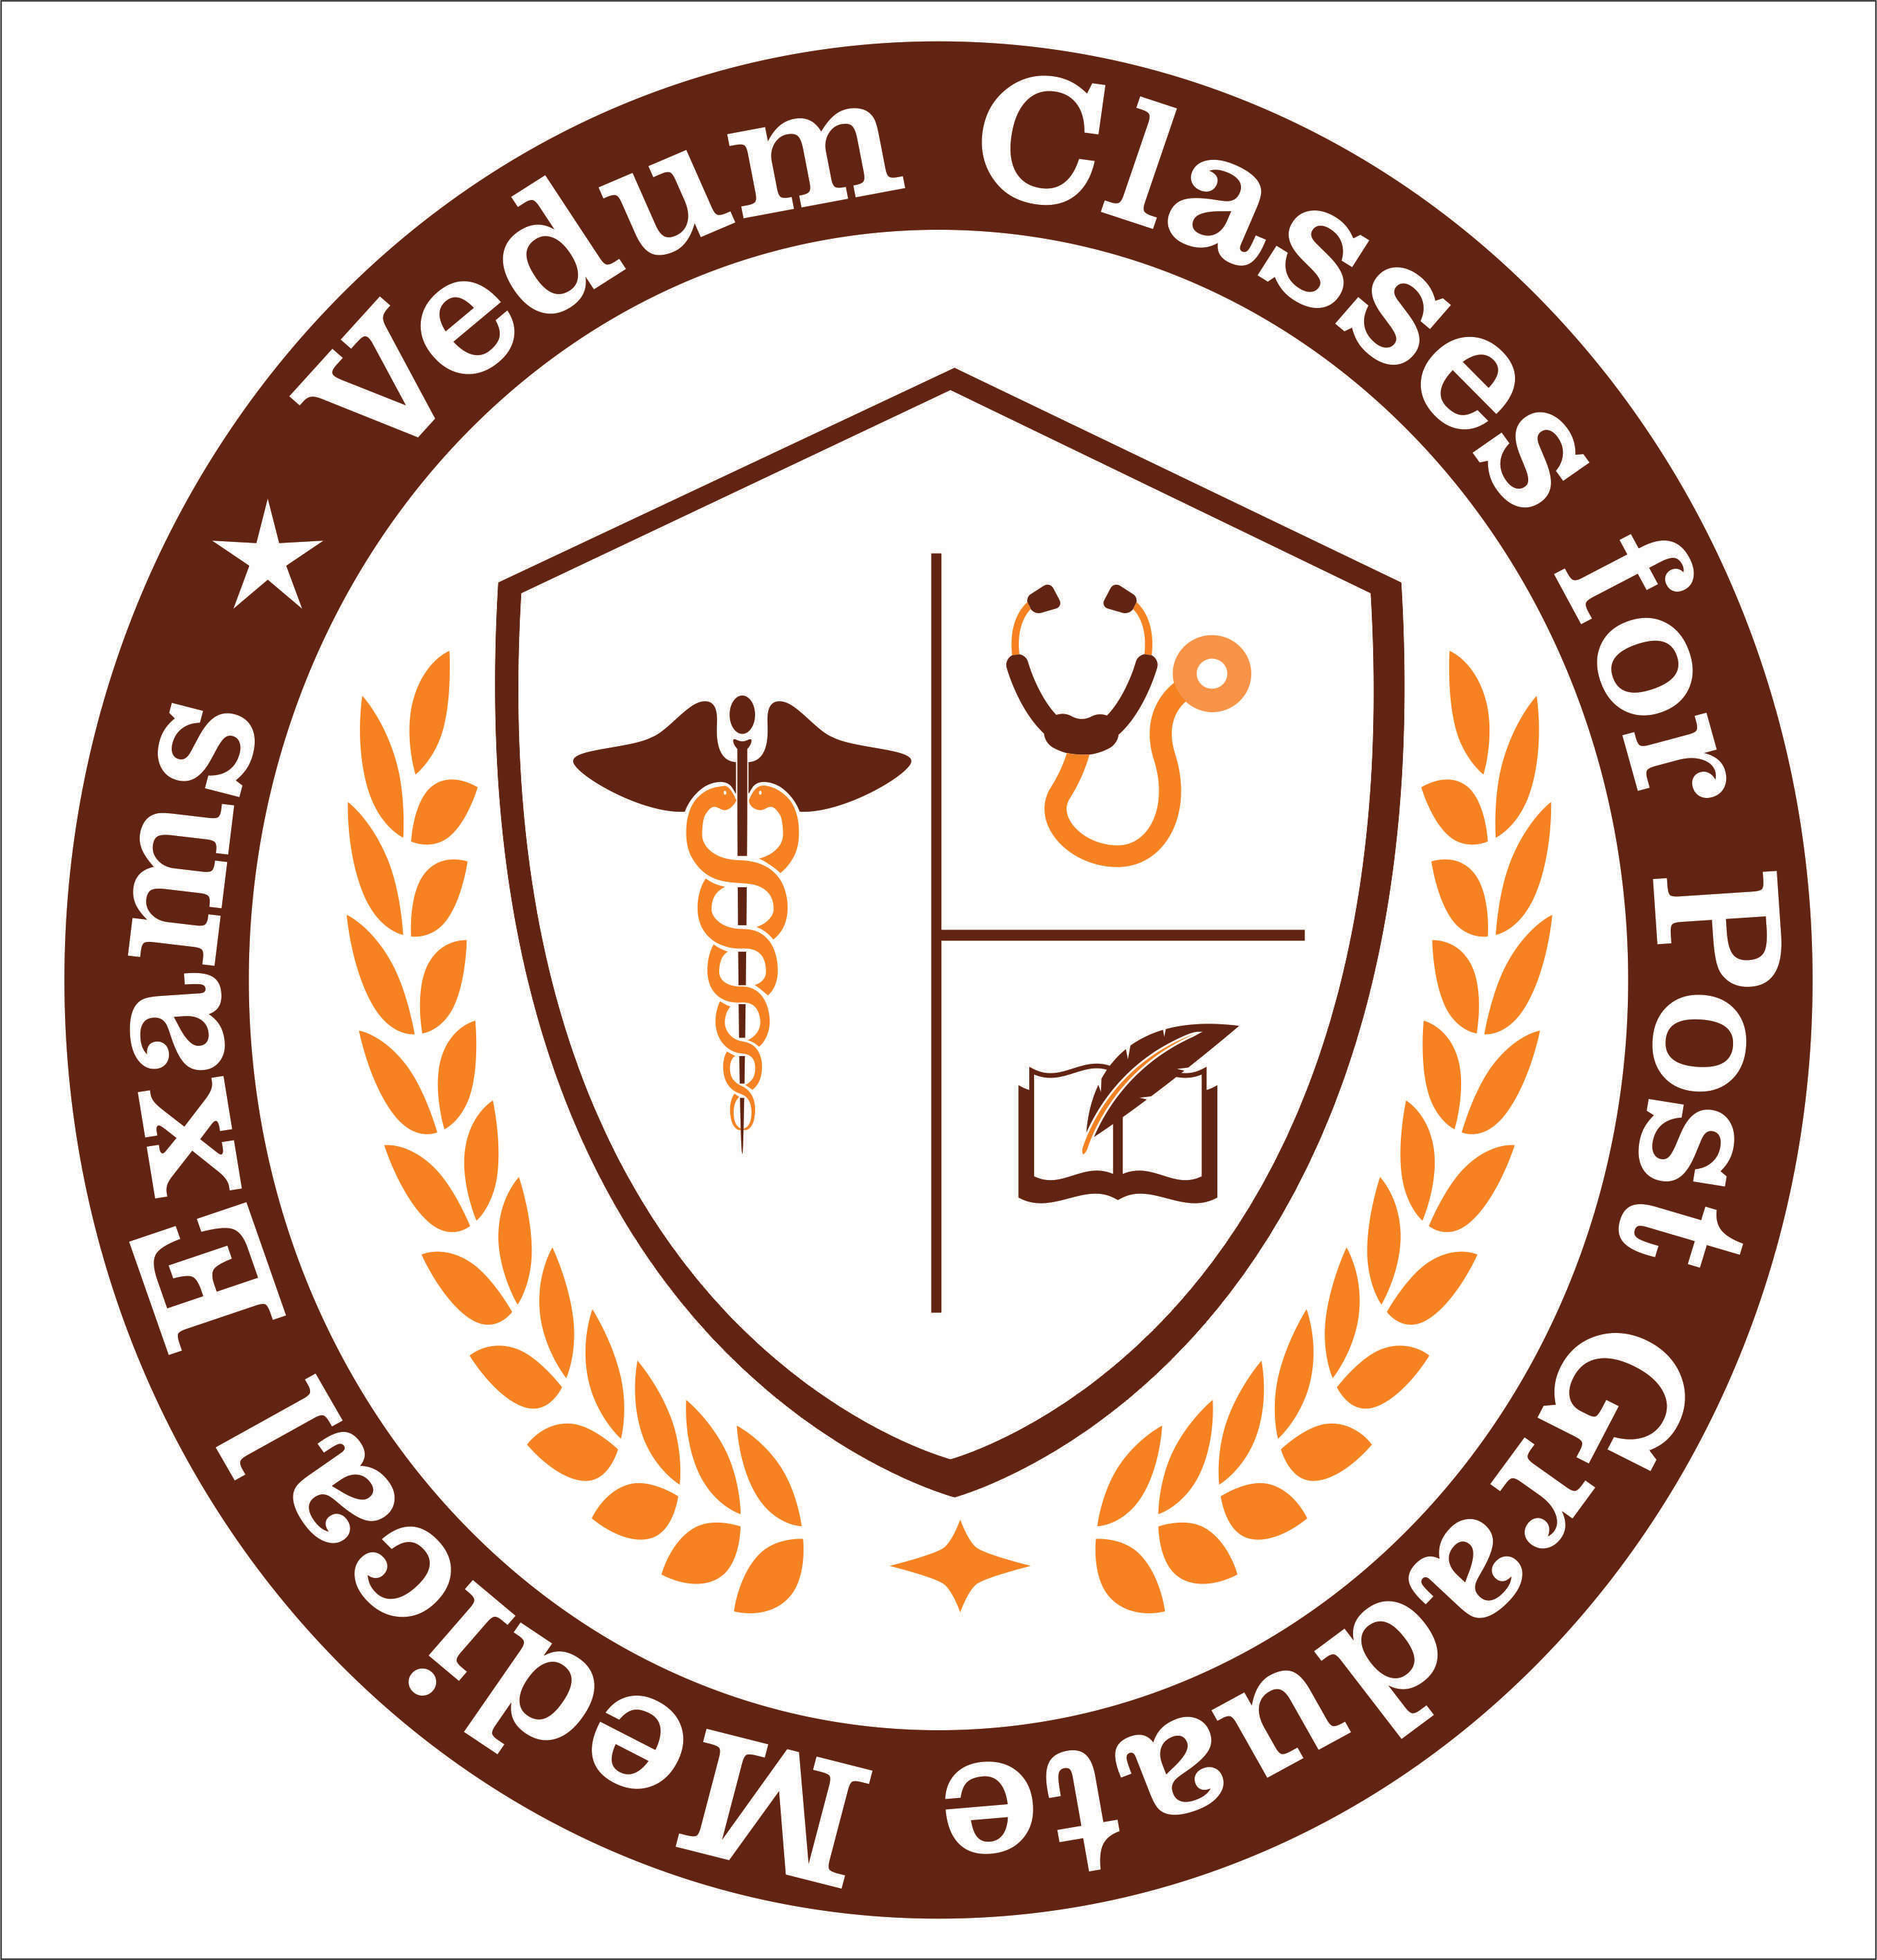 Vedum Institute of Medical Sciences